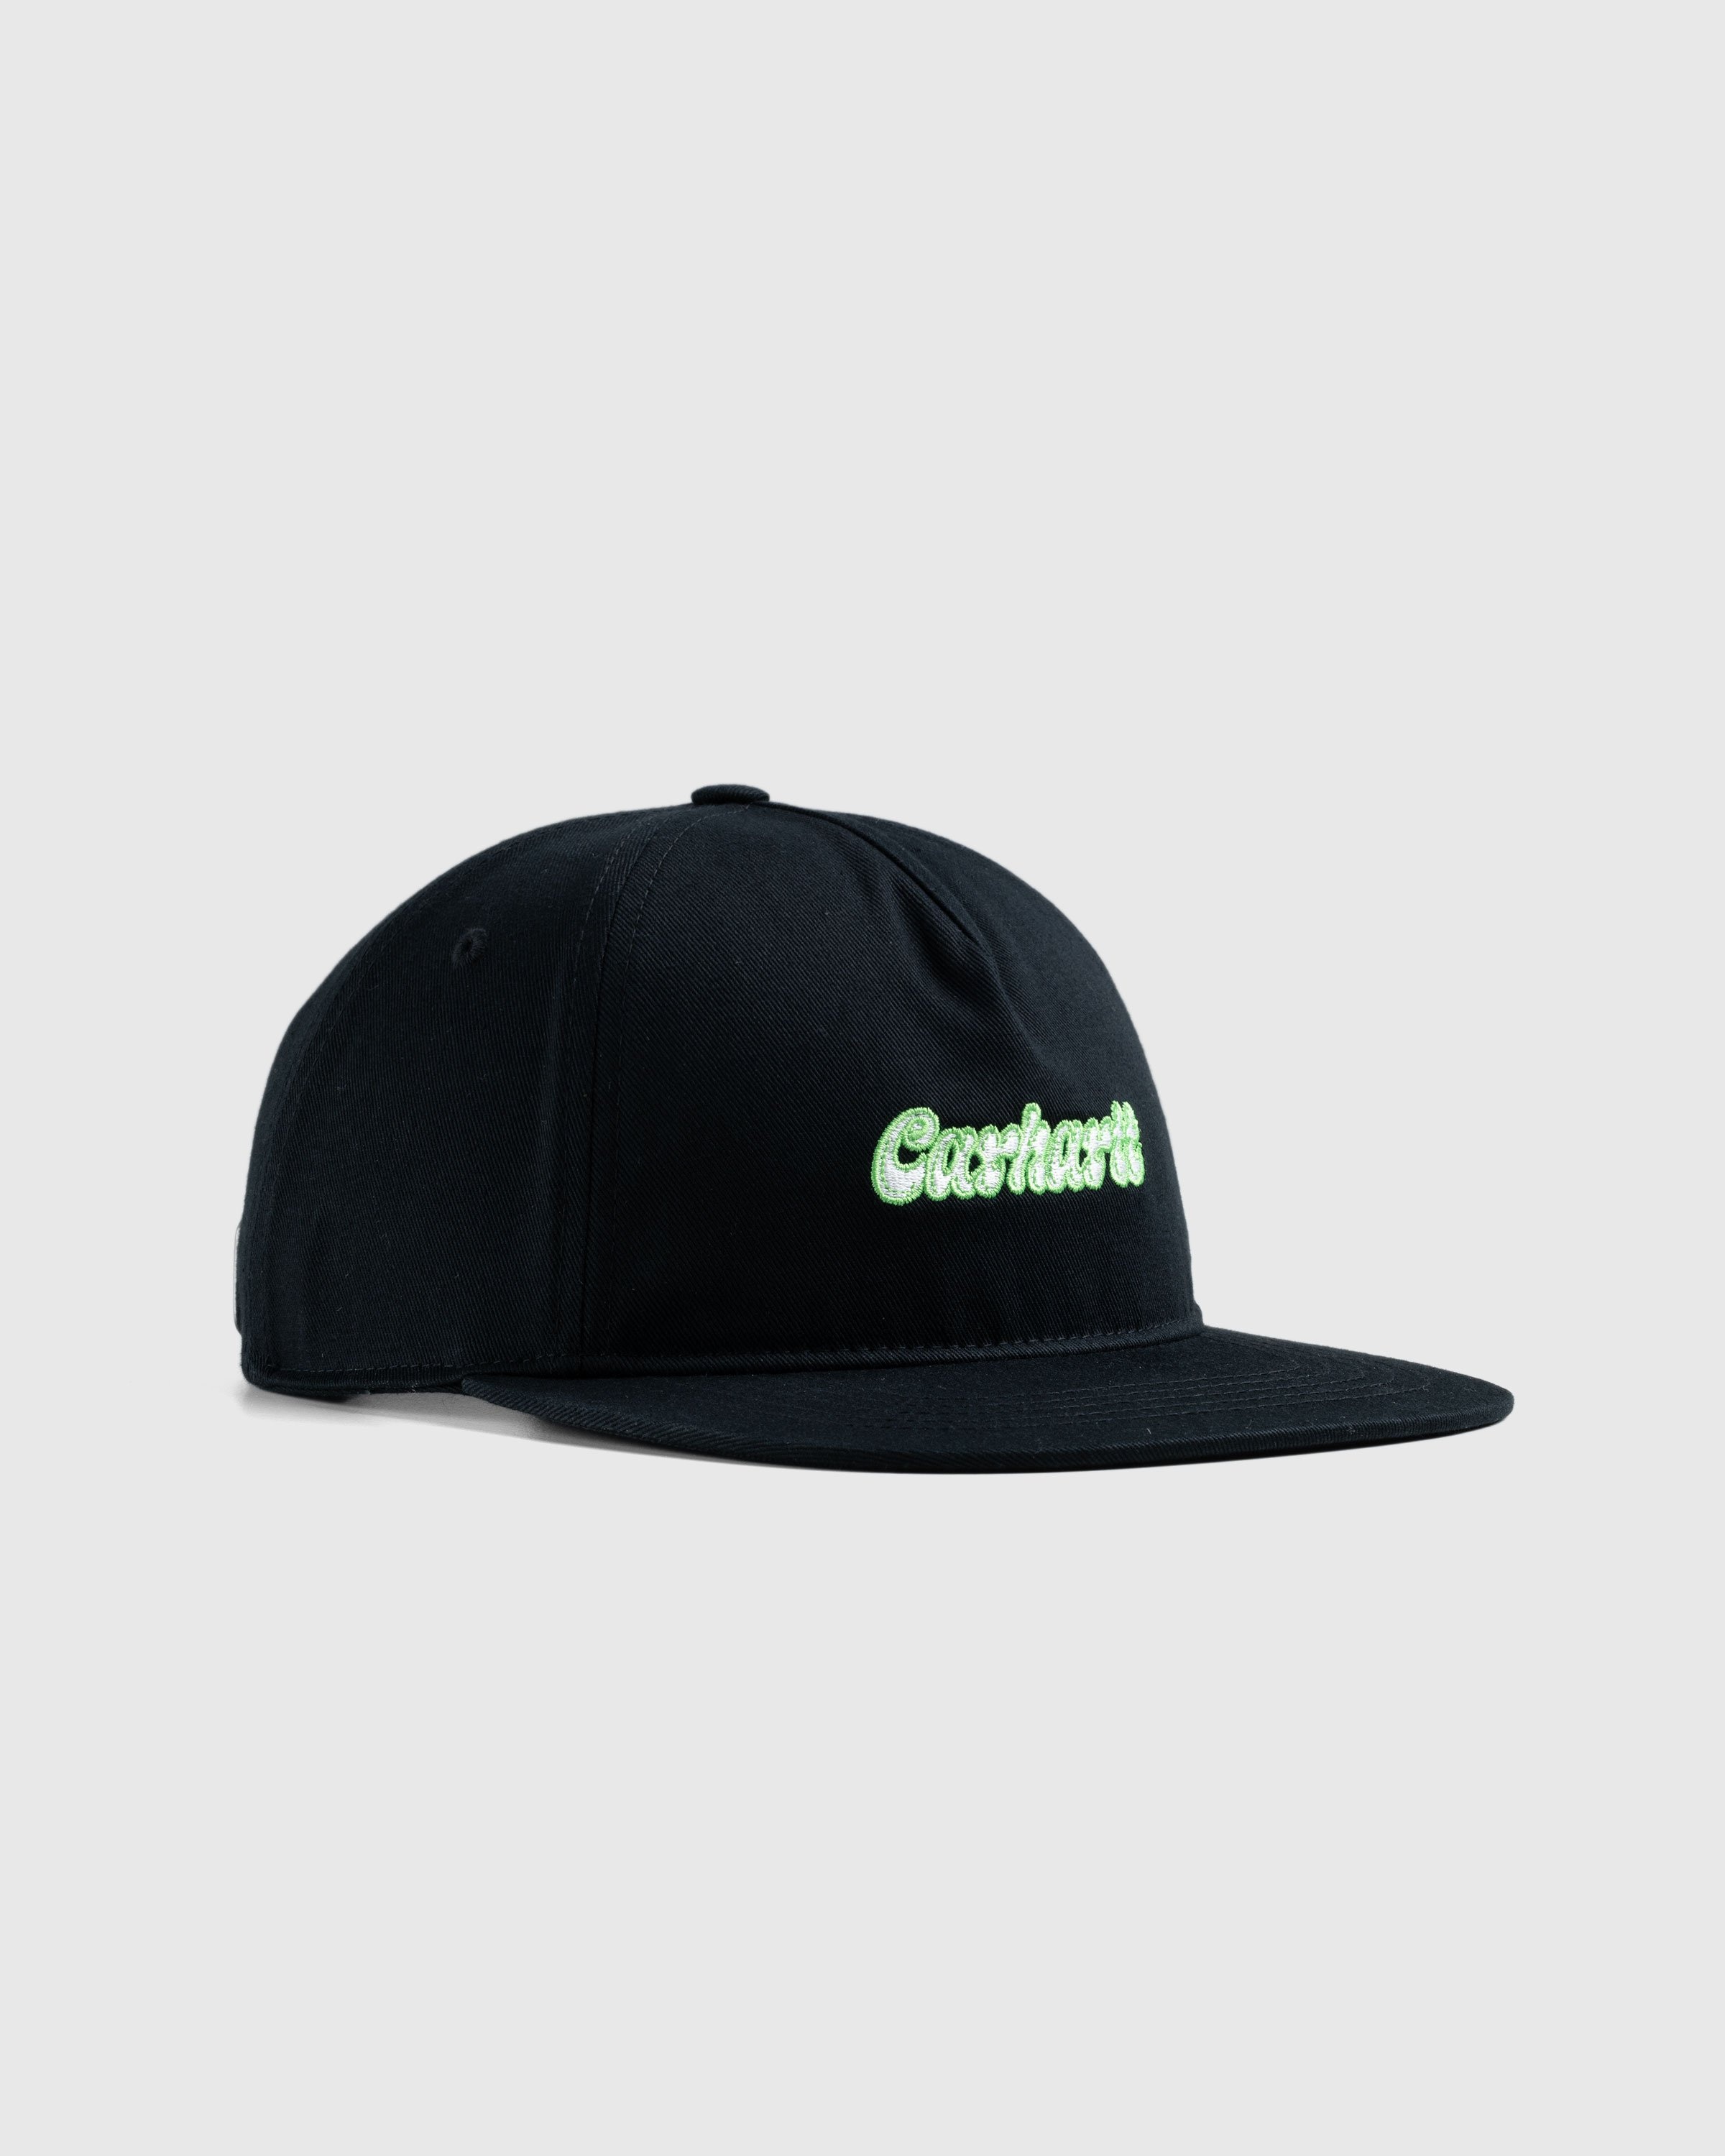 Carhartt WIP – Liquid Script Cap Black - Hats - Black - Image 1